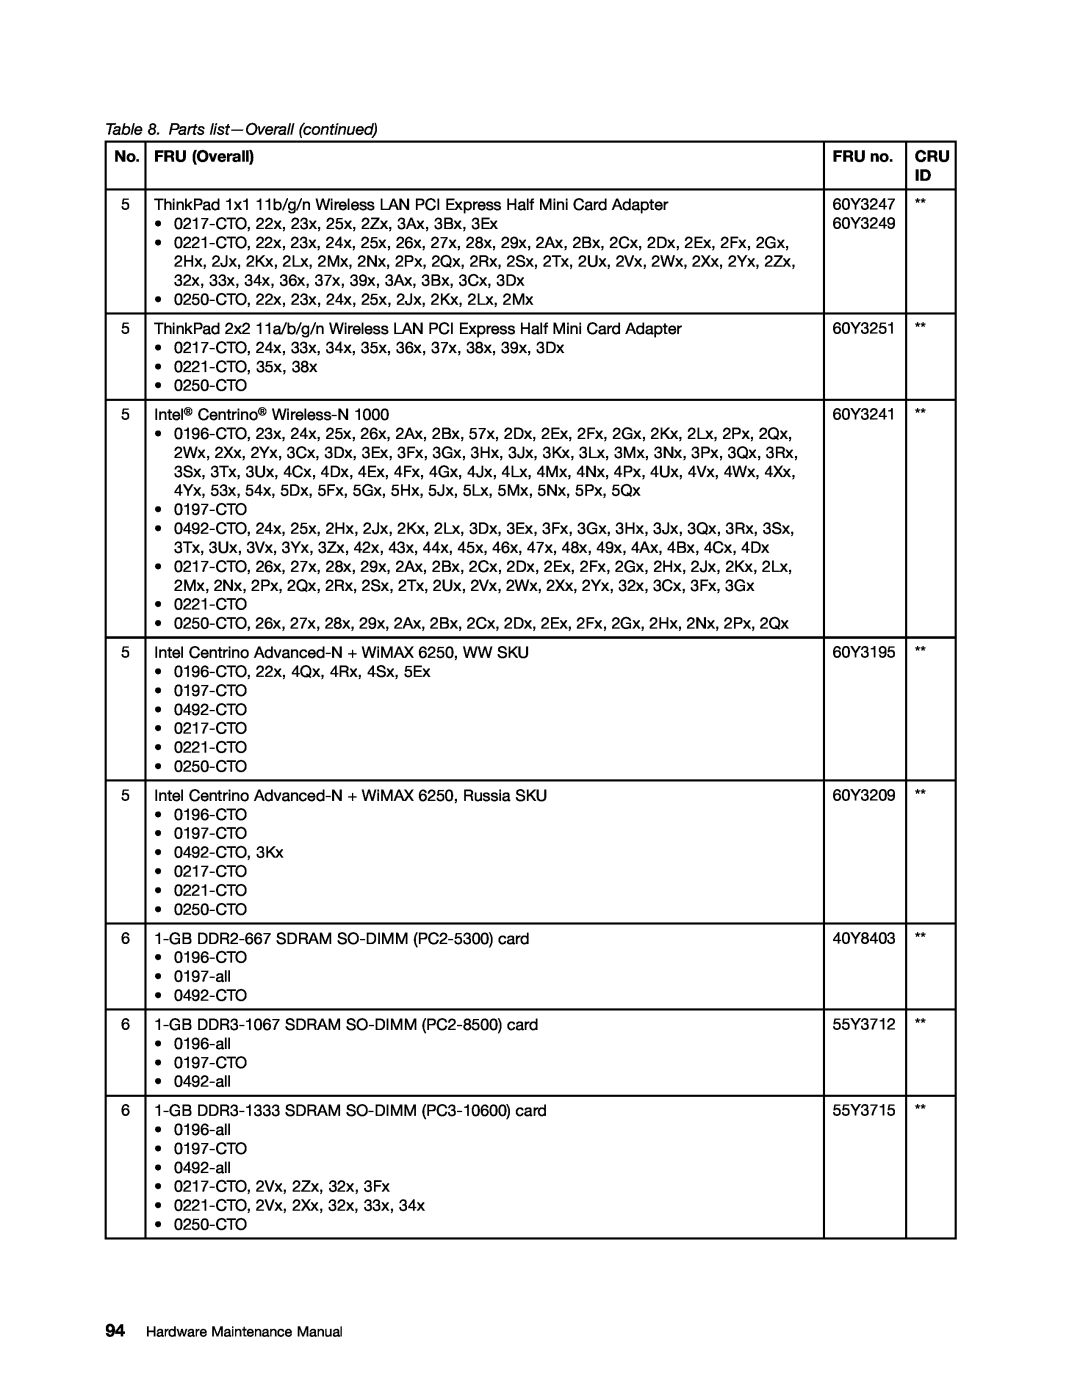 Lenovo E30, E31, EDGE 13 manual Parts list-Overall continued, FRU Overall, FRU no 